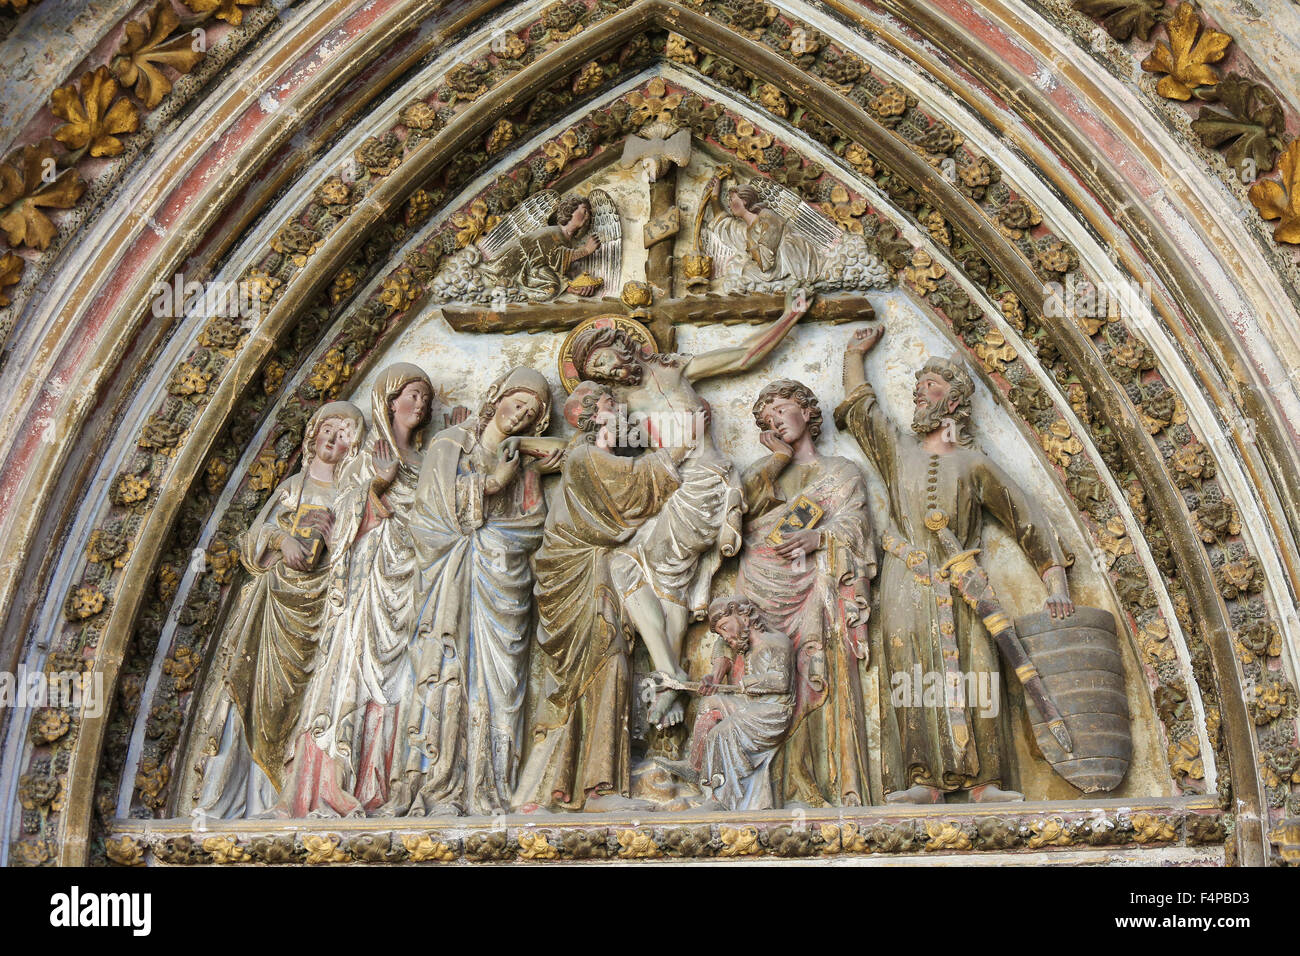 BURGOS, España - Agosto 13, 2014: la escultura de la Crucifixión en la Catedral de Burgos, Castilla, España Foto de stock